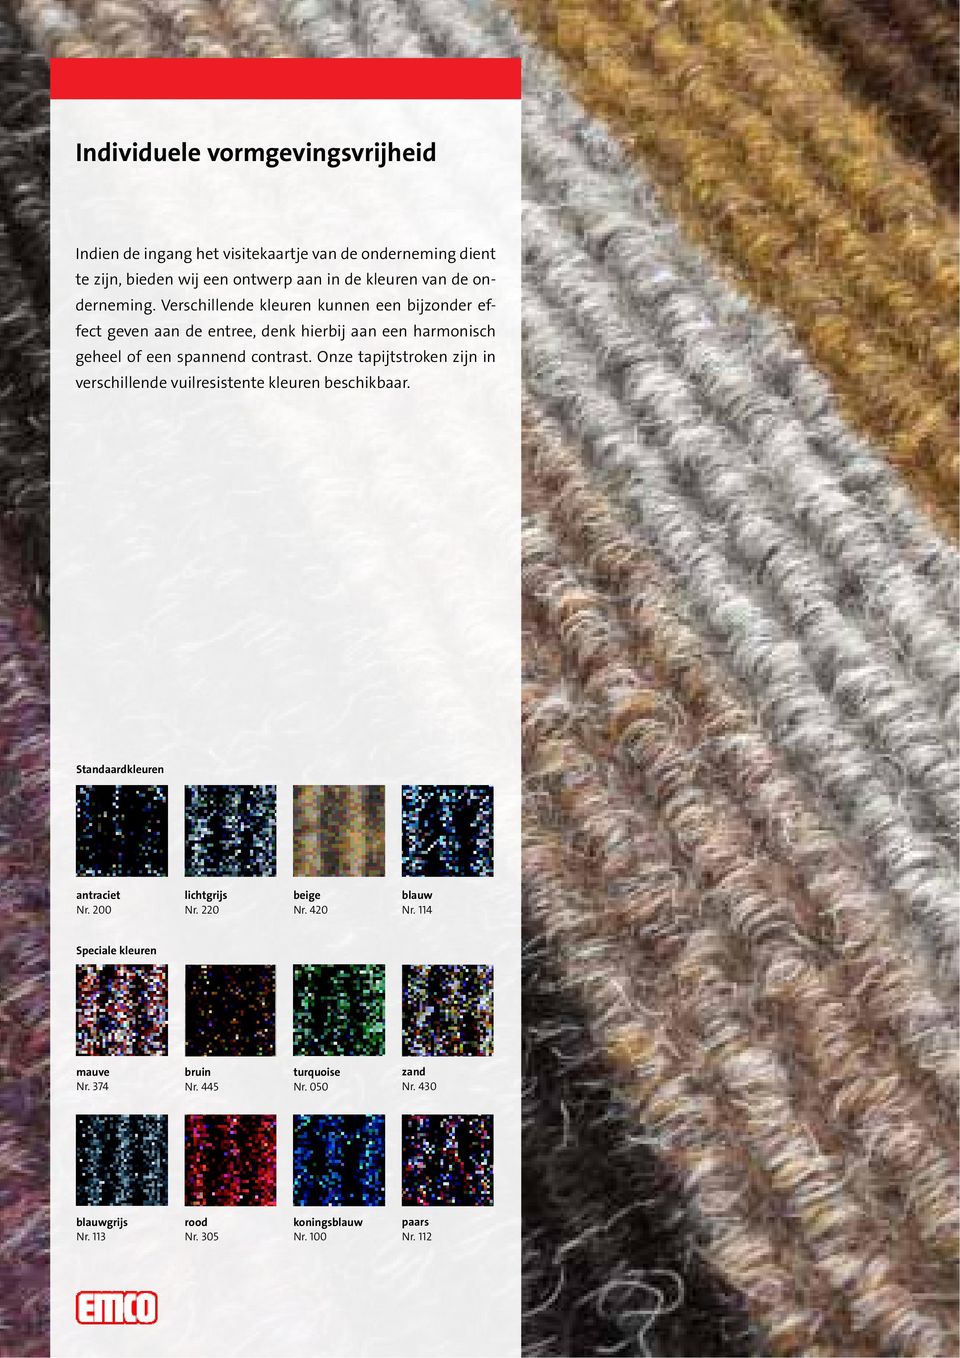 Onze tapijtstroken zijn in verschillende vuilresistente kleuren beschikbaar. Standaardkleuren antraciet Nr. 200 lichtgrijs Nr. 220 beige Nr.